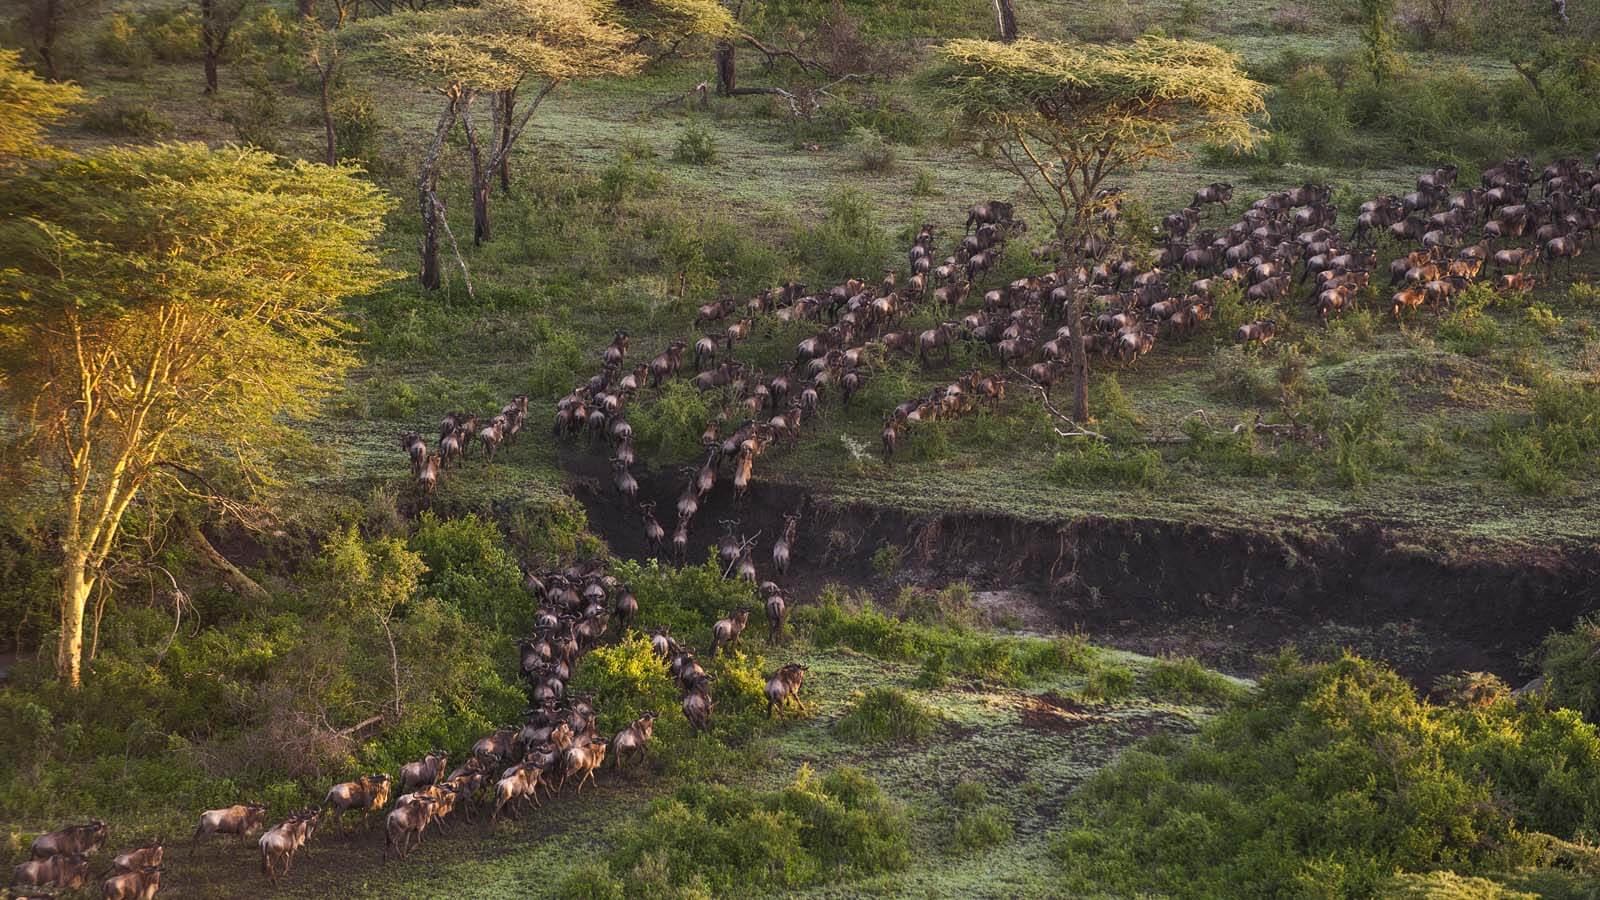 Migrating herds of wilebeest